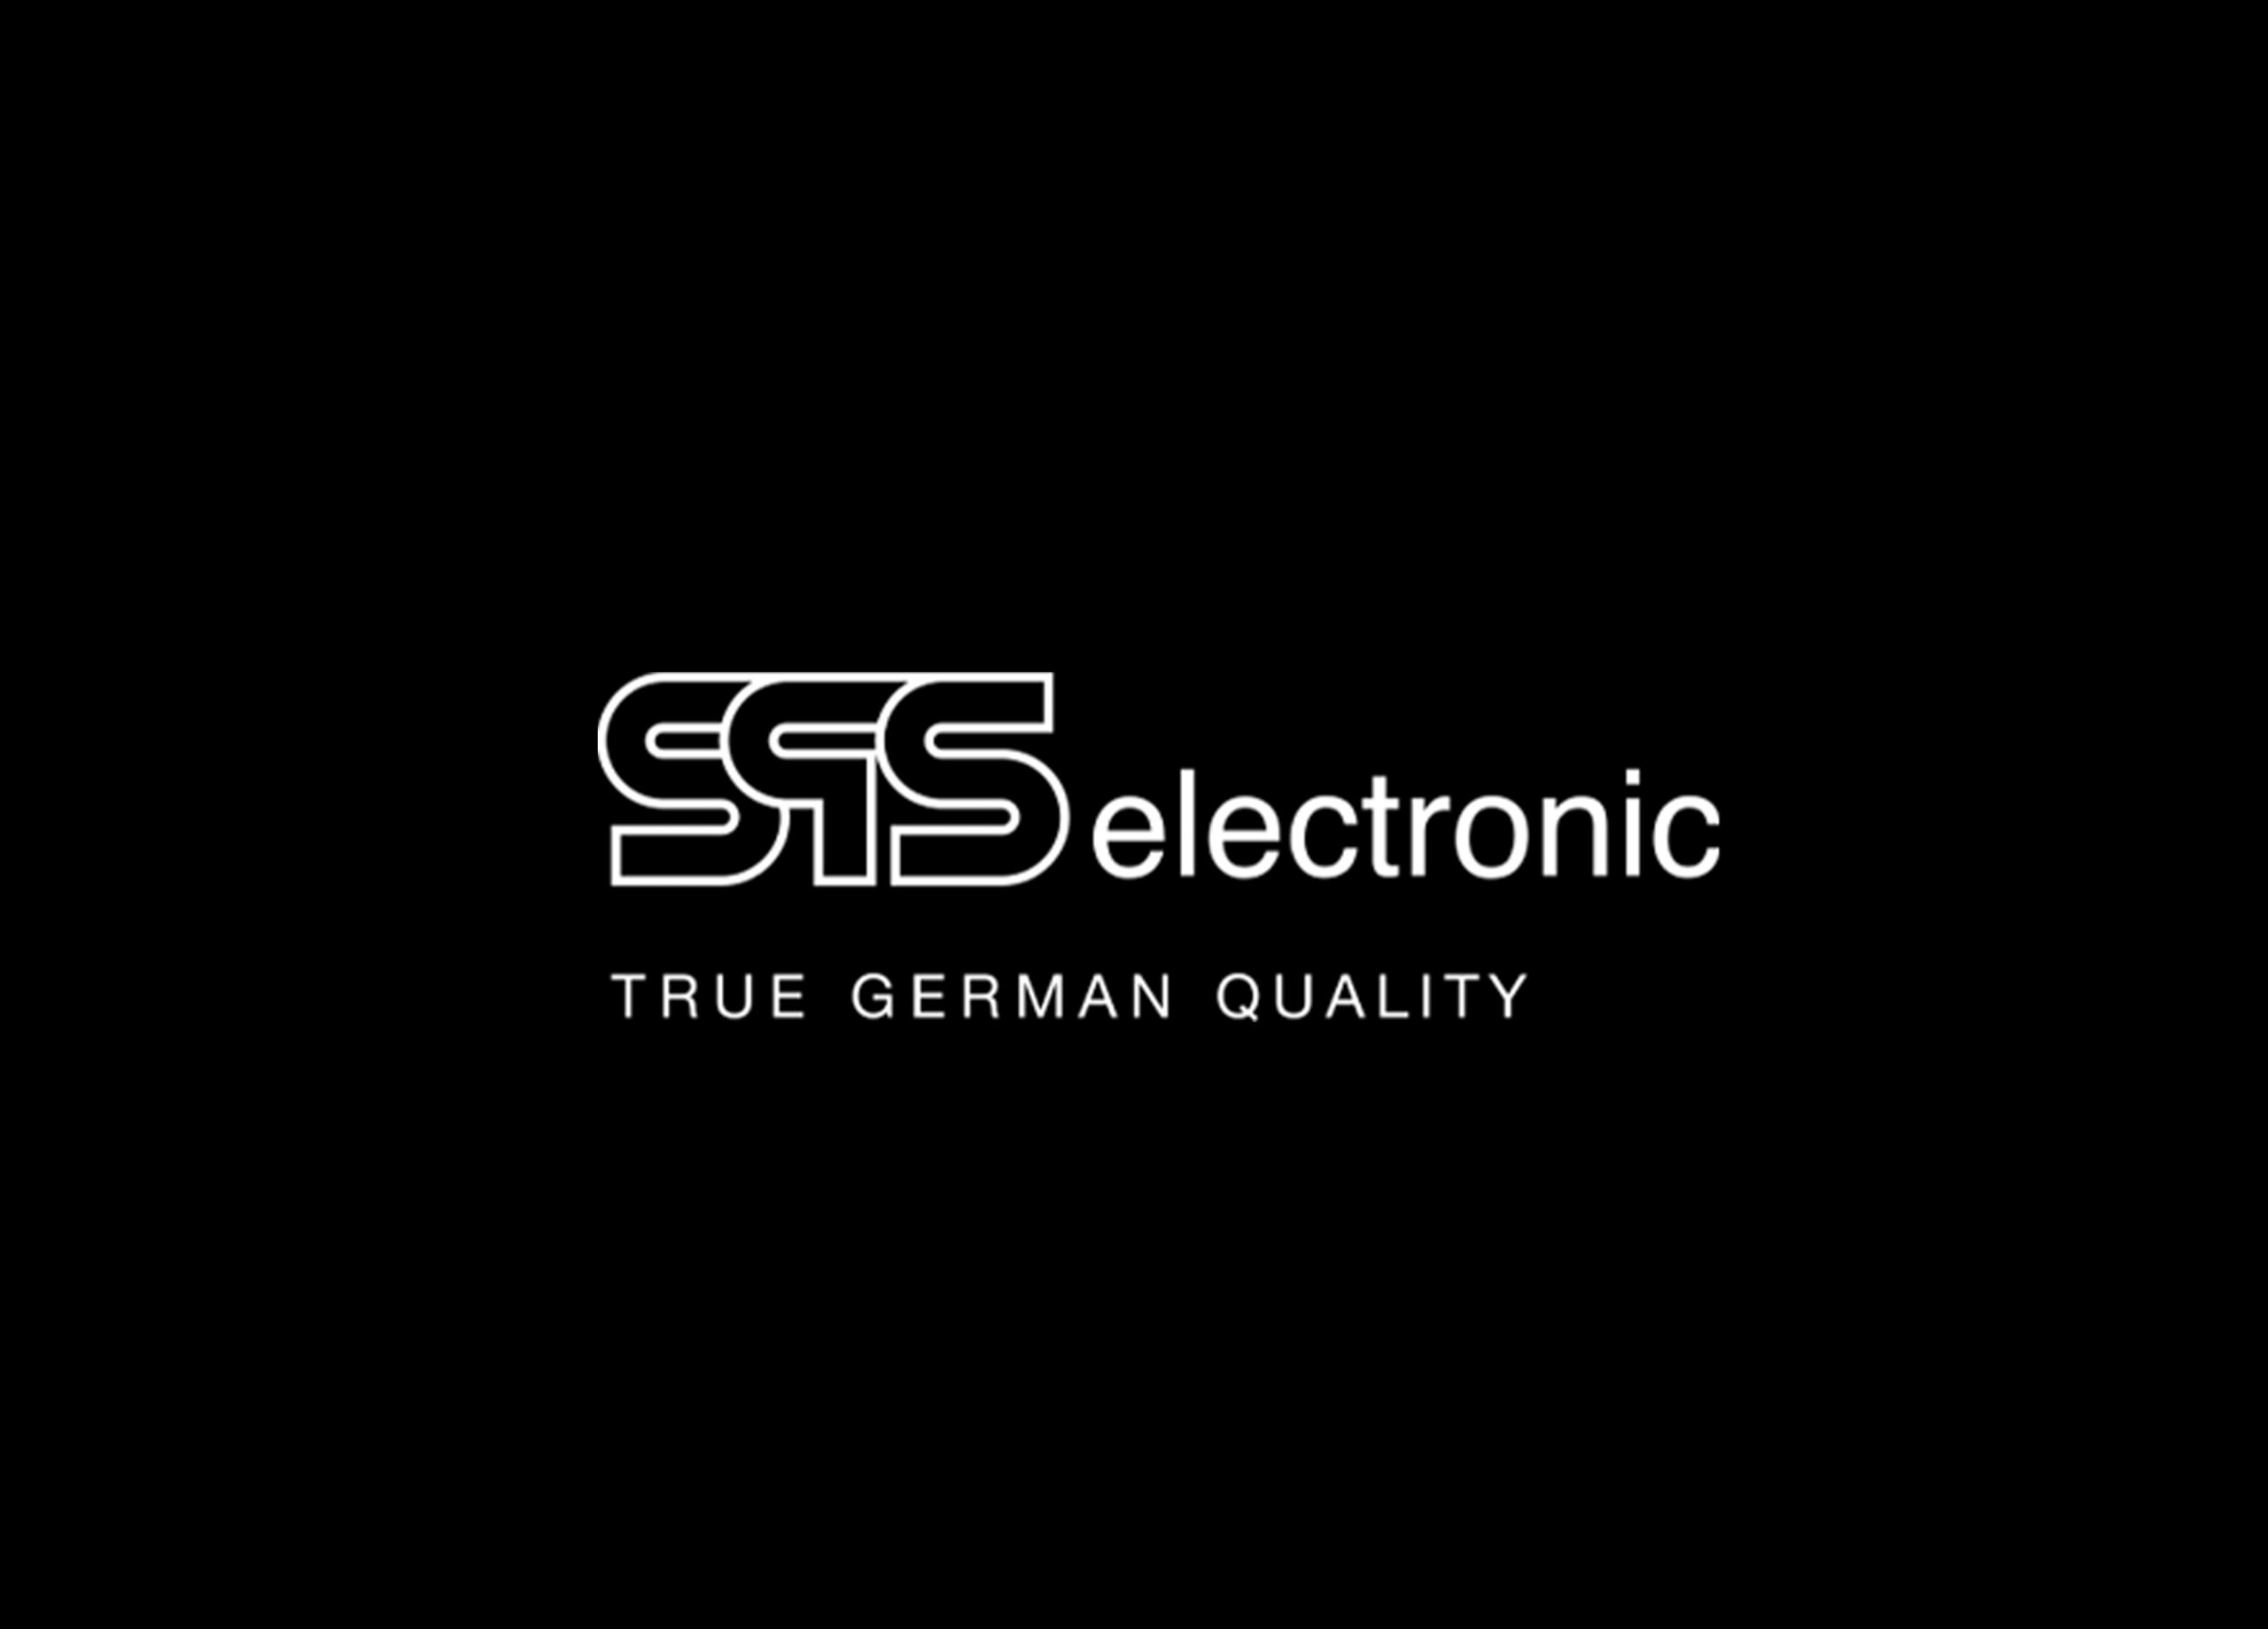 Logo SPS electronic.